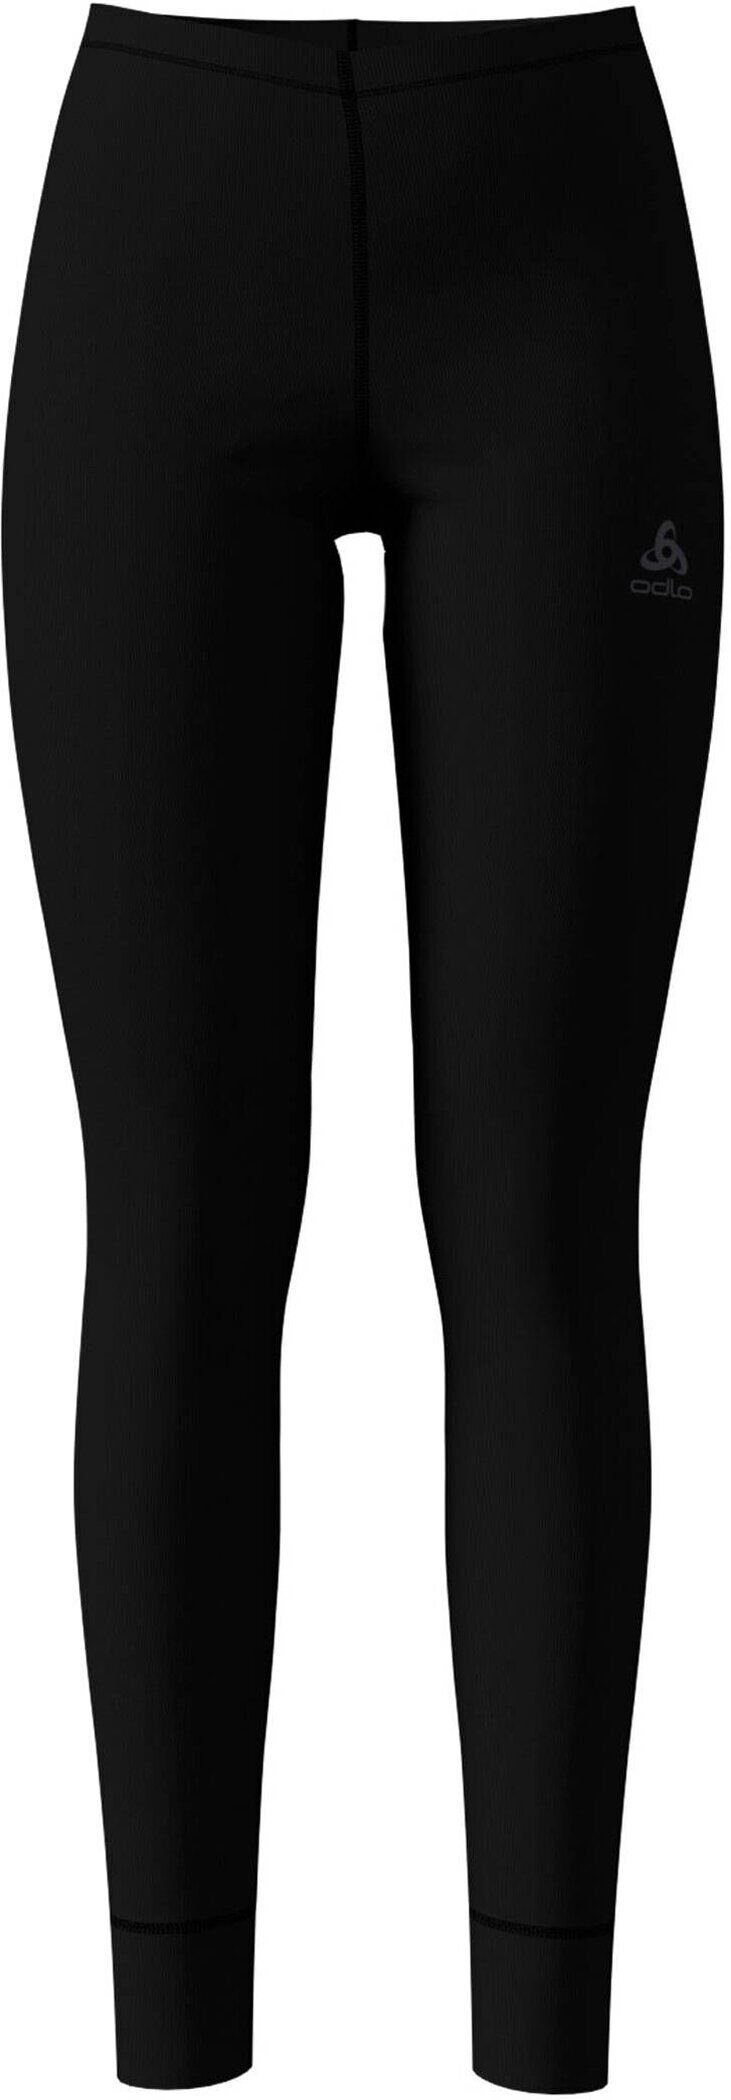 Odlo BLACK im Leggings Uni-Look (1-tlg)